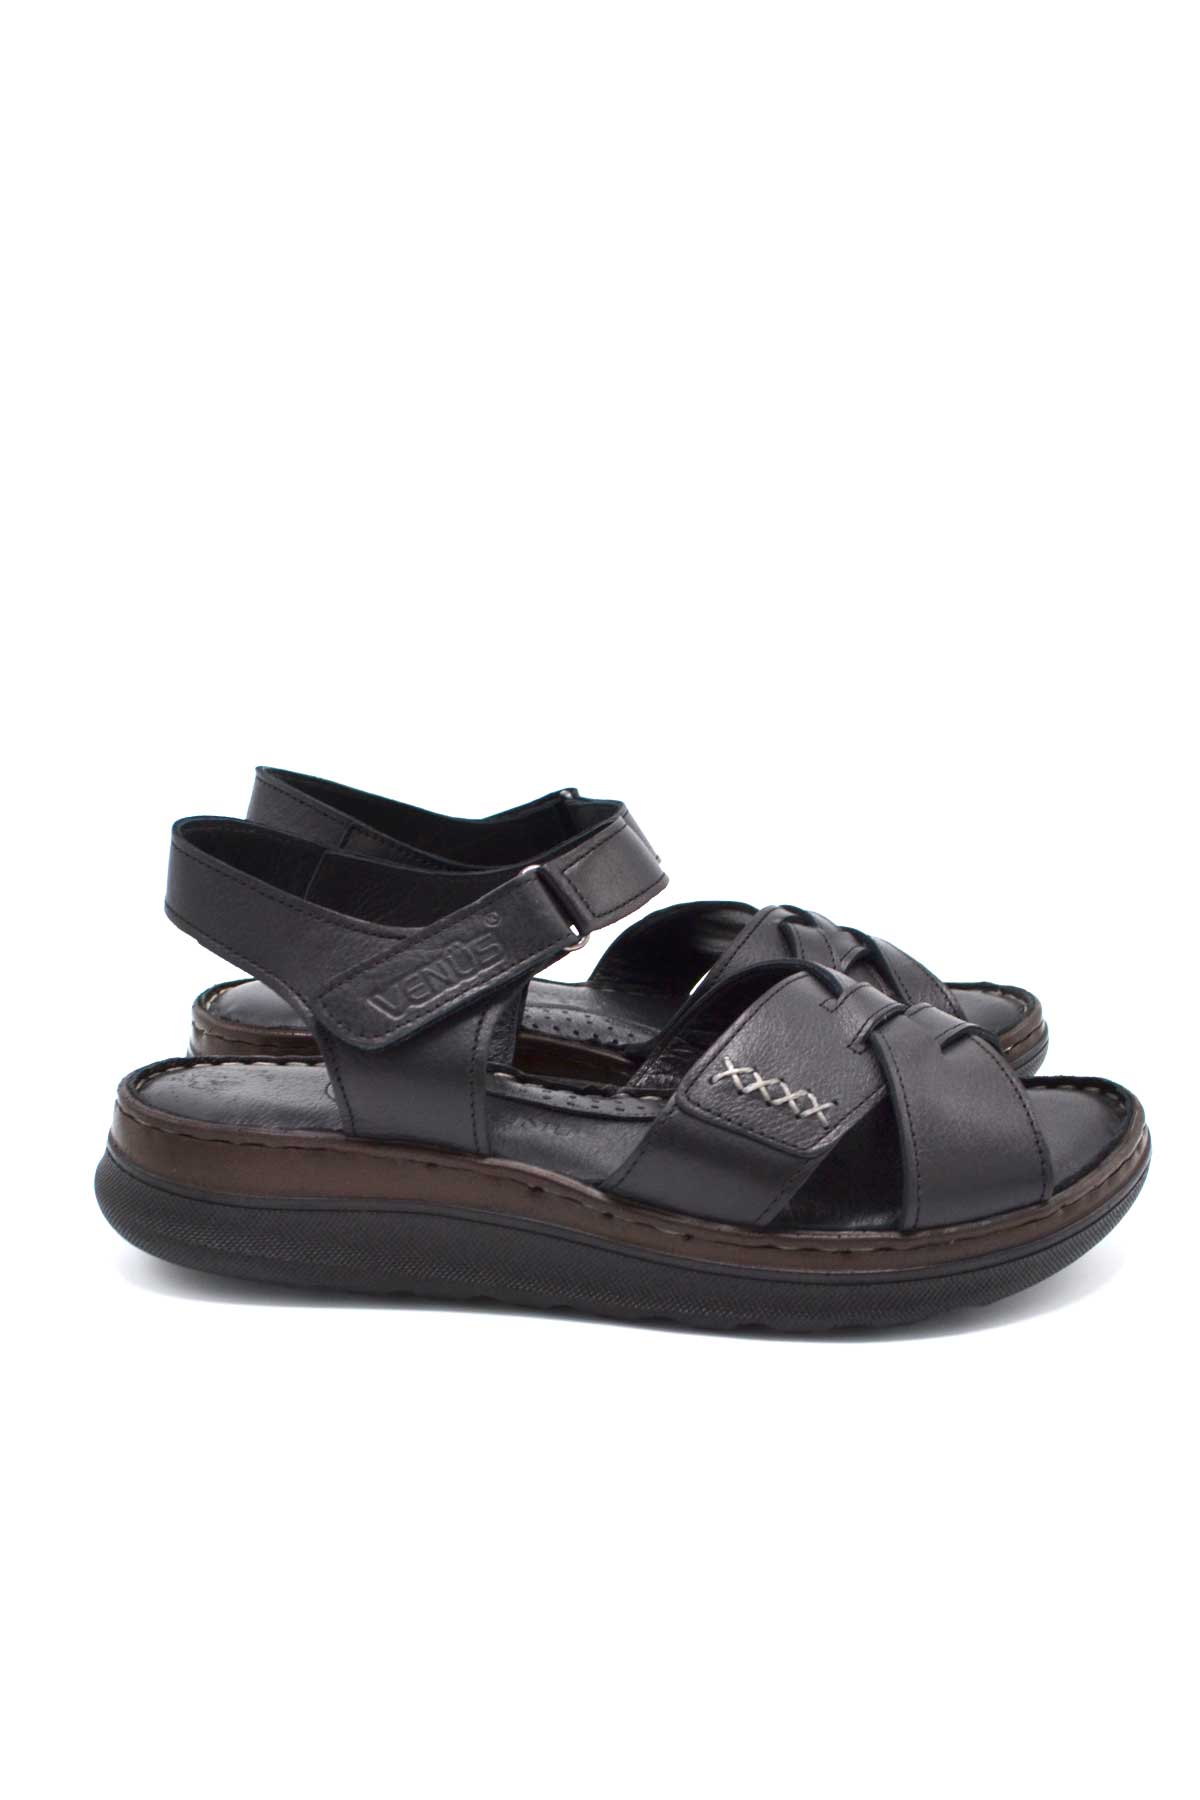 Kadın Comfort Deri Sandalet Siyah 22981709